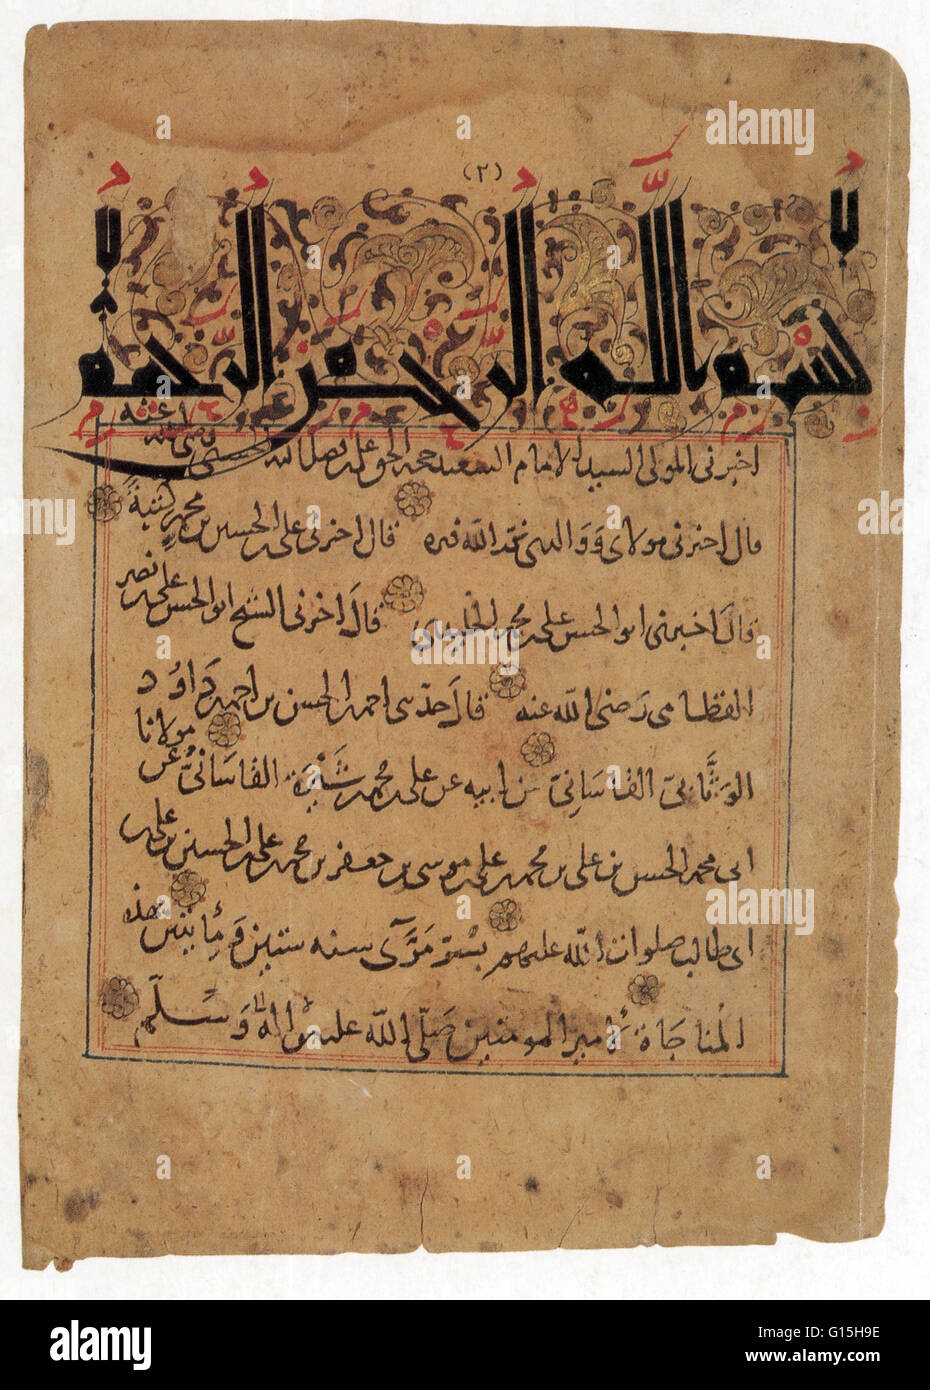 Ali ibn -Fotos und -Bildmaterial in hoher Auflösung – Alamy